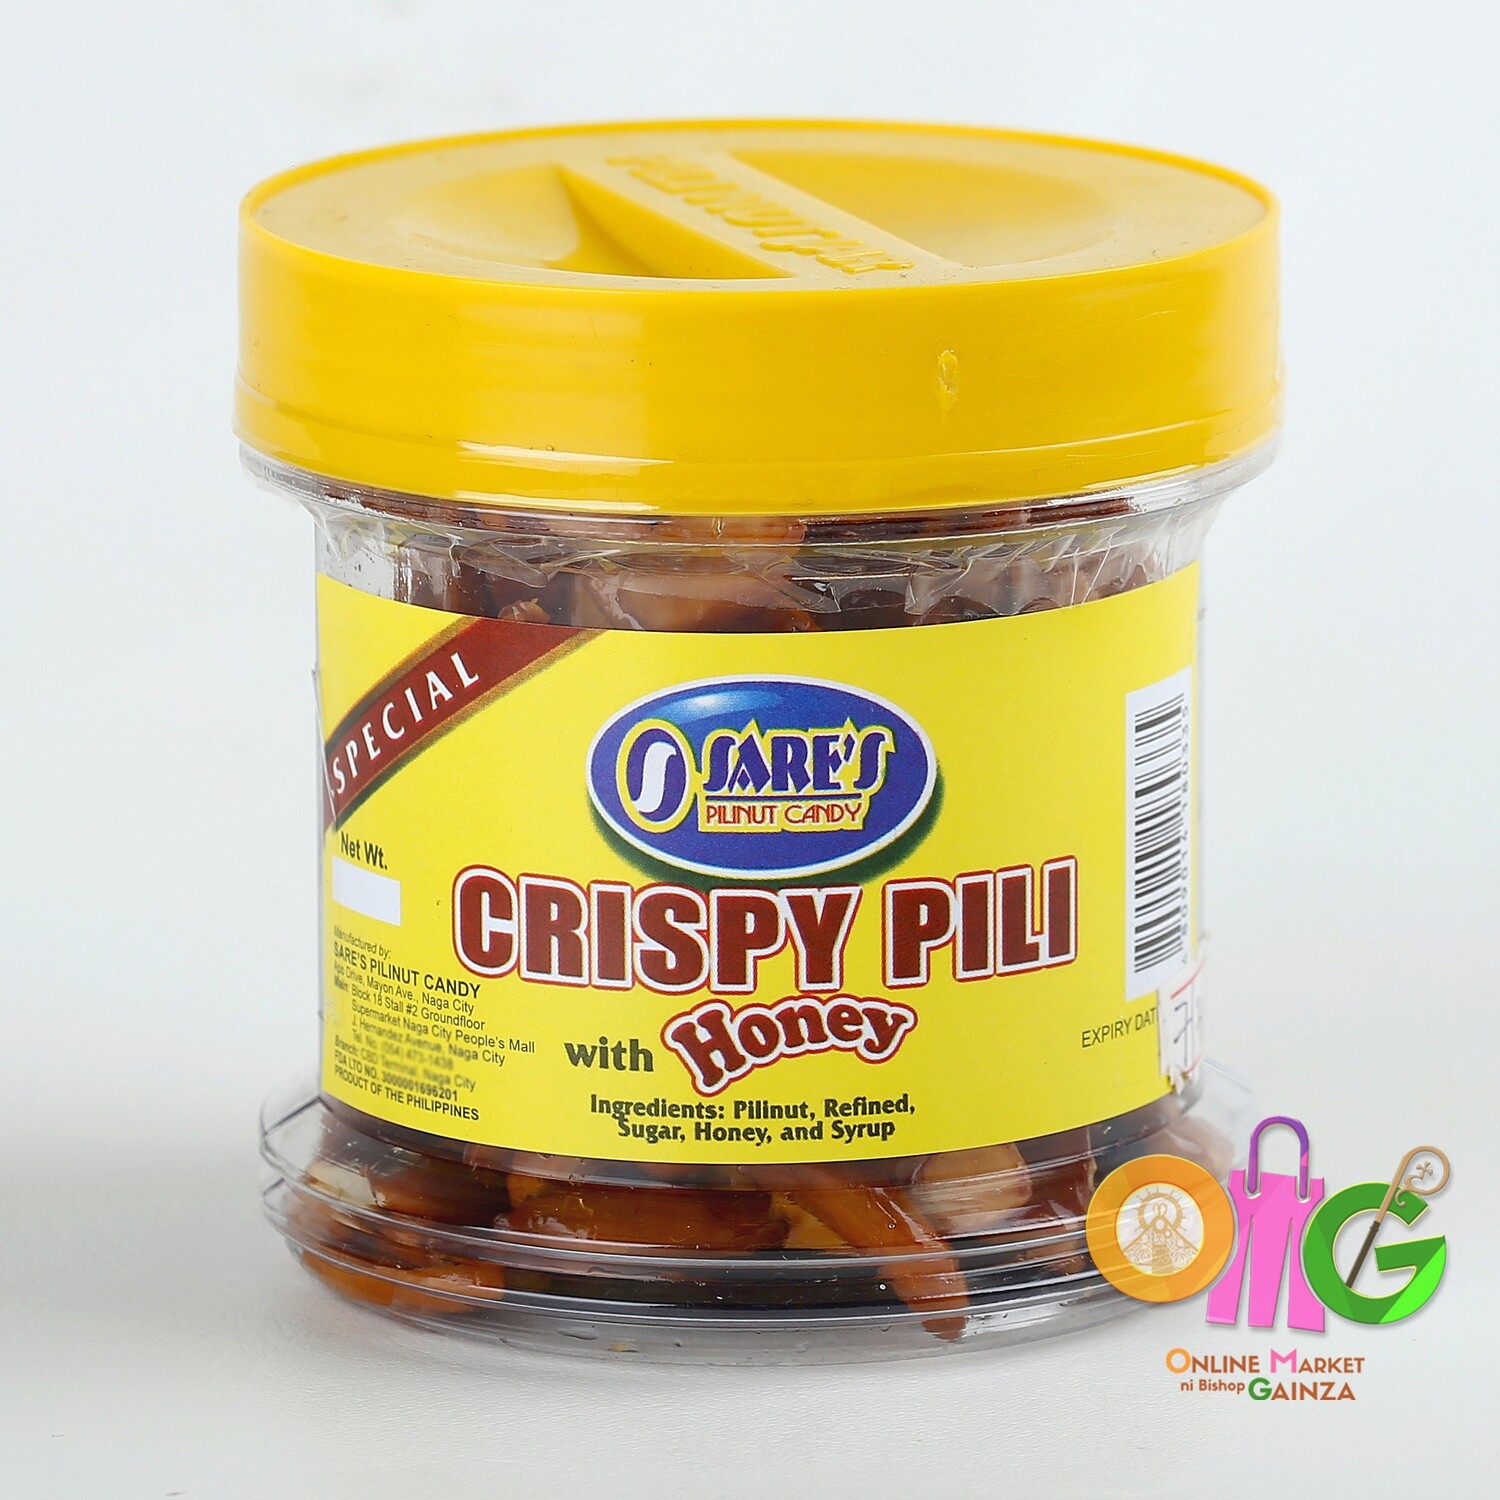 Sare's Pili - Crispy Pili Nut Honey Glaze